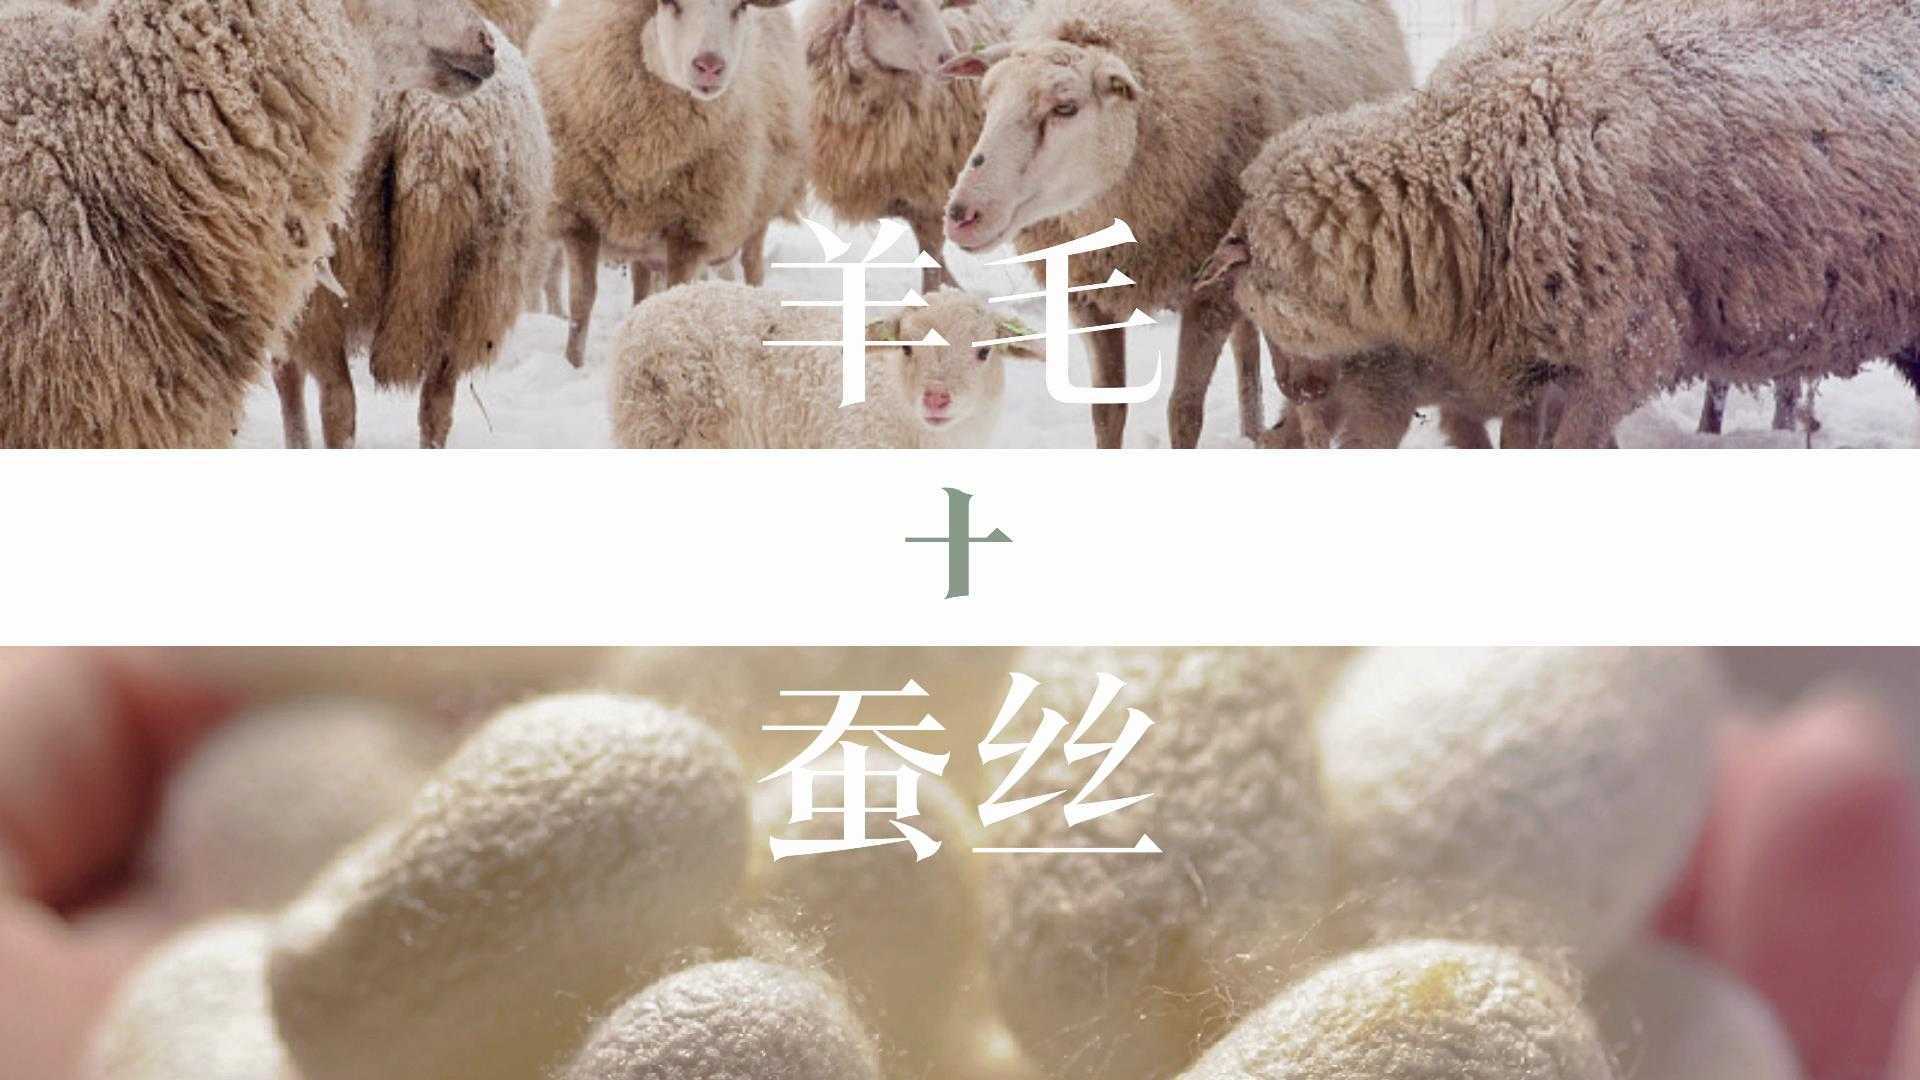 保暖内衣 | 慕羊 羊蚕必暖系列 广告